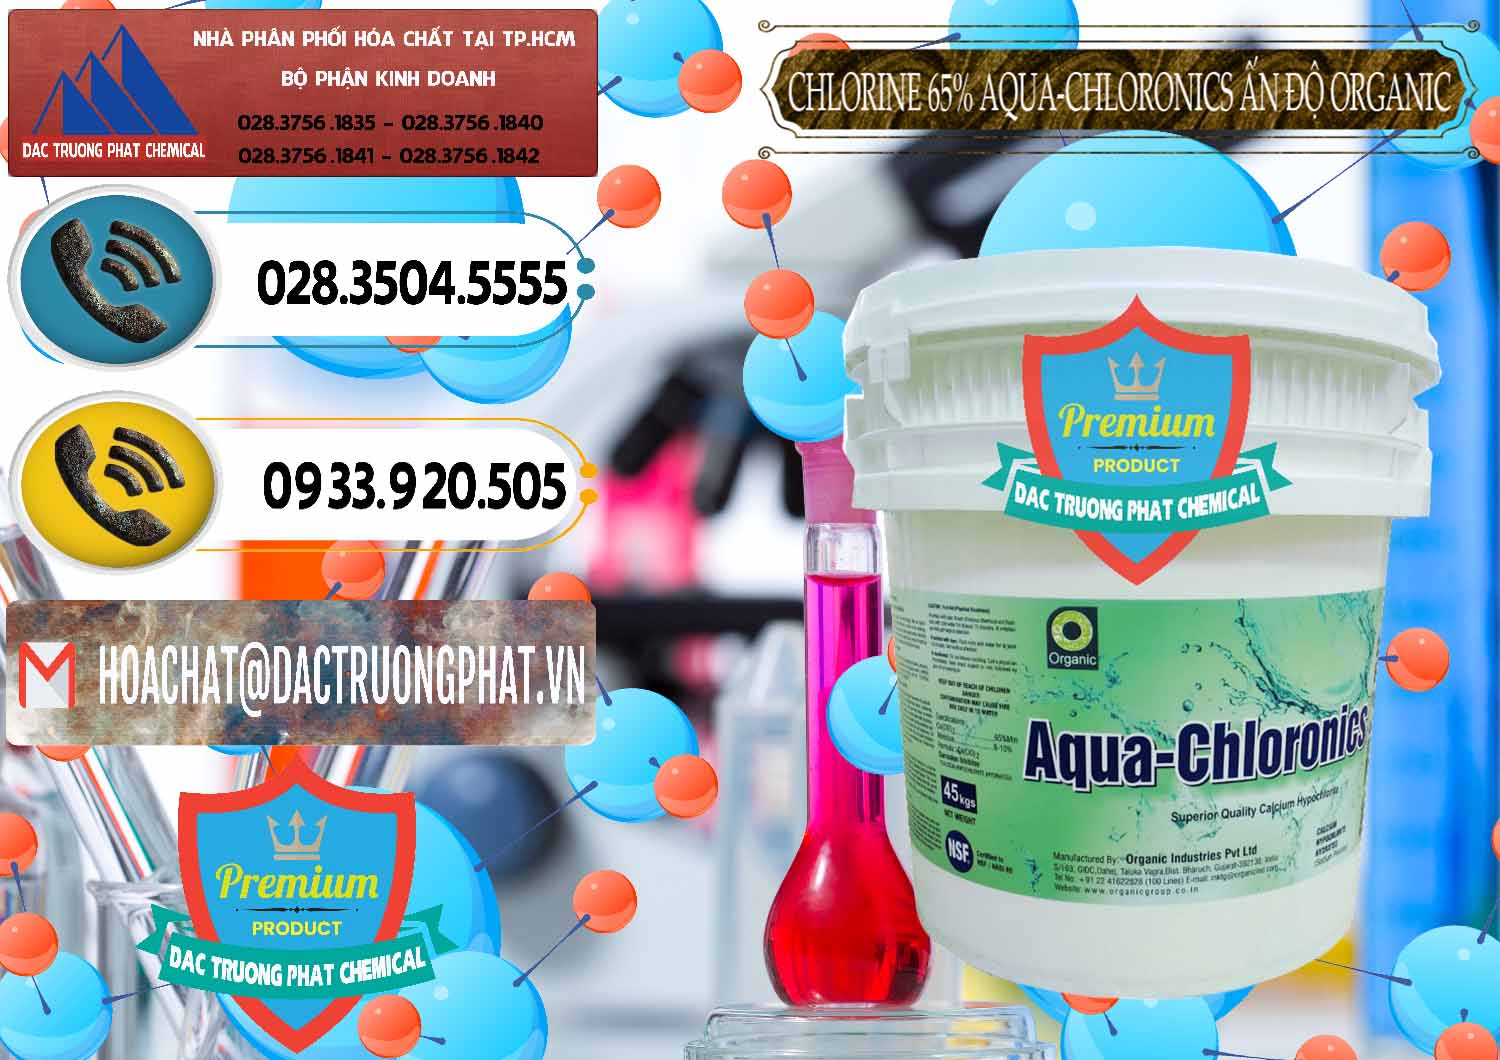 Công ty nhập khẩu ( bán ) Chlorine – Clorin 65% Aqua-Chloronics Ấn Độ Organic India - 0210 - Đơn vị phân phối và cung cấp hóa chất tại TP.HCM - hoachatdetnhuom.vn